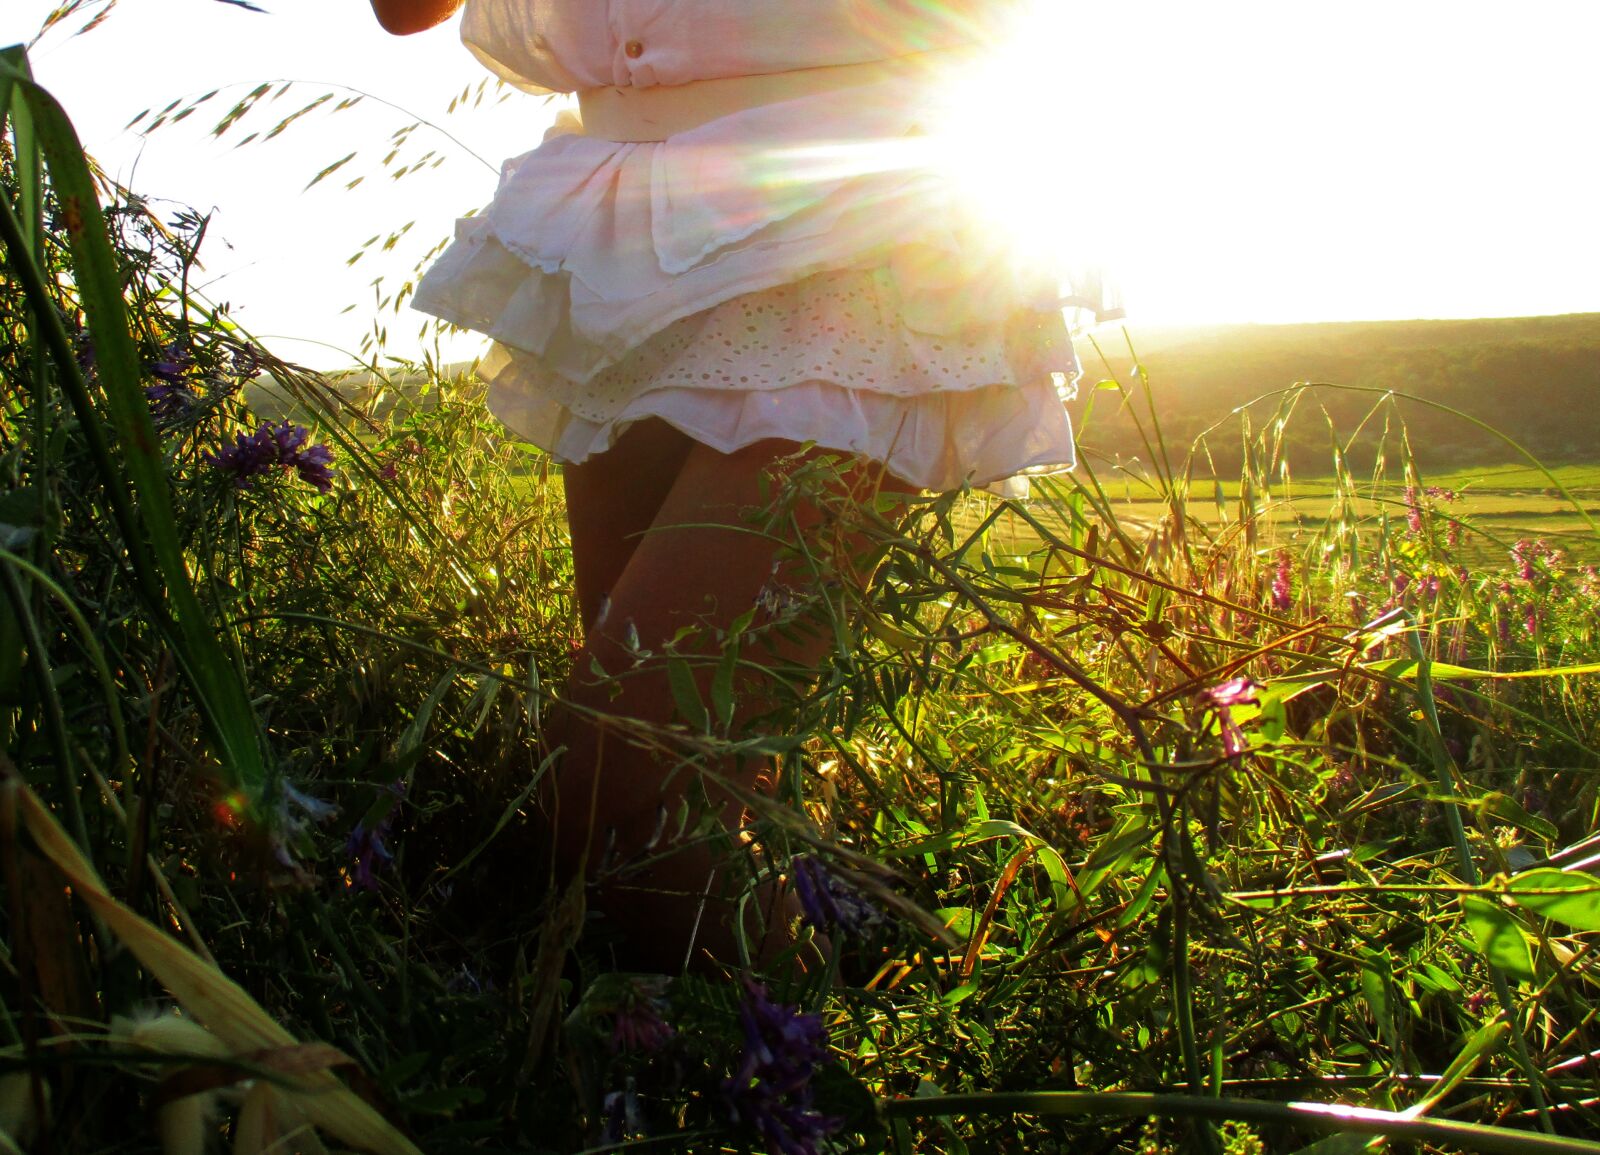 Canon IXUS 185 sample photo. Skirt, legacy, sunset photography